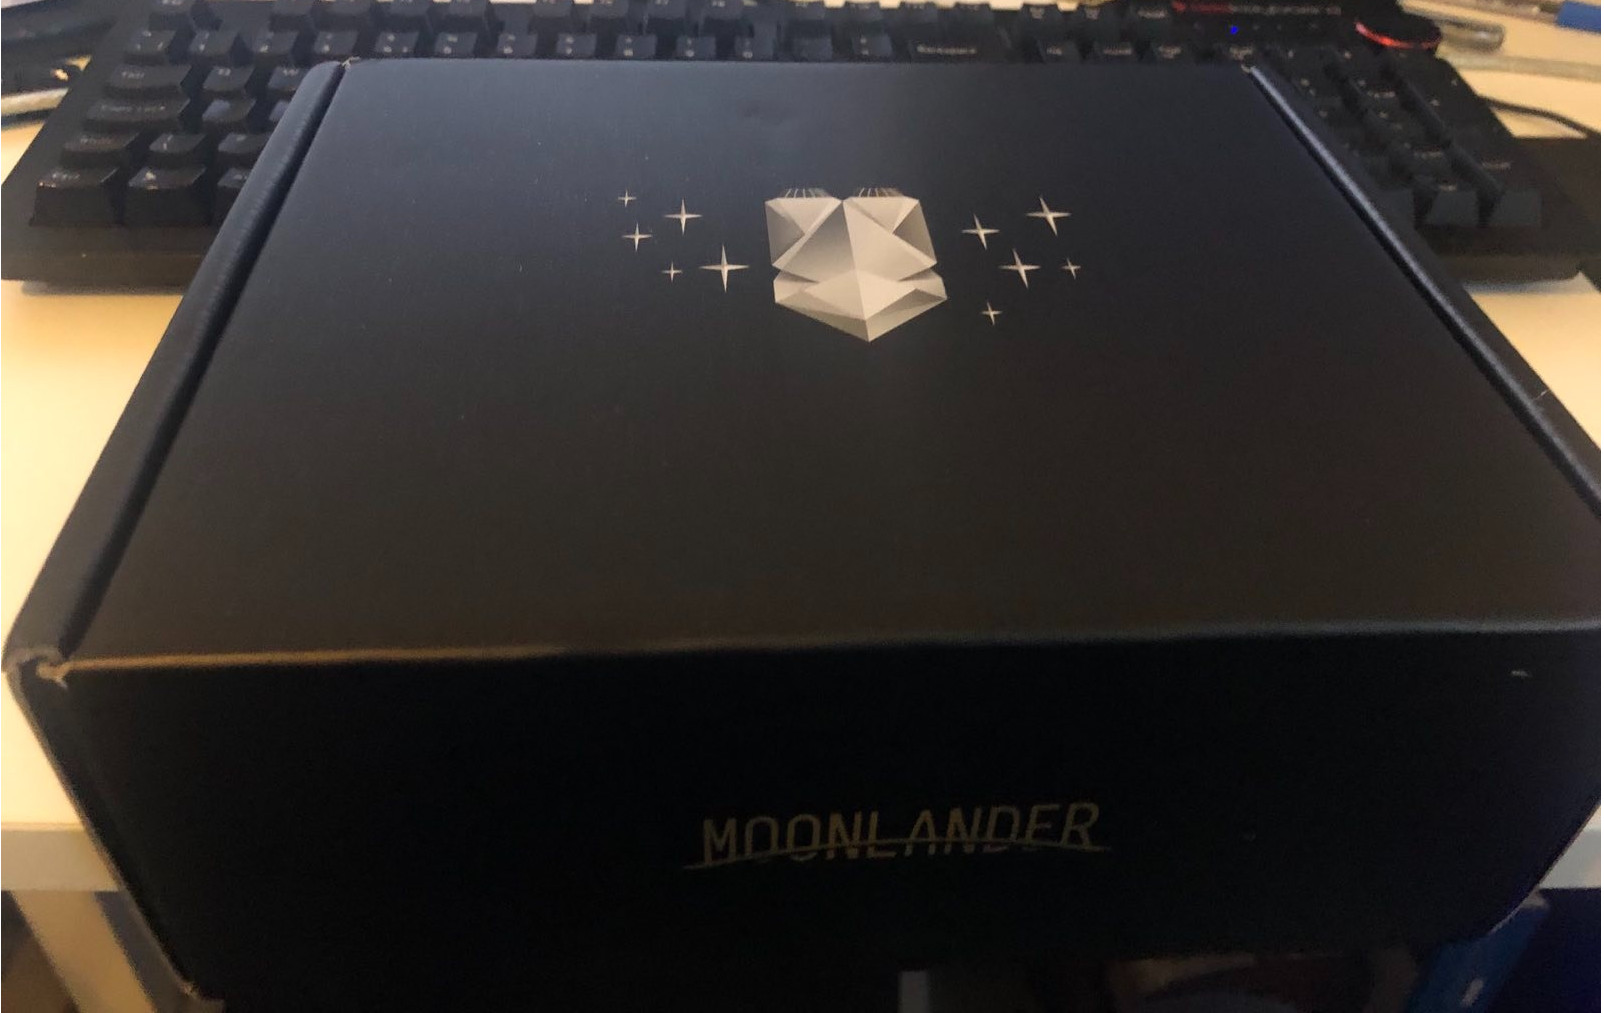 Moonlander box